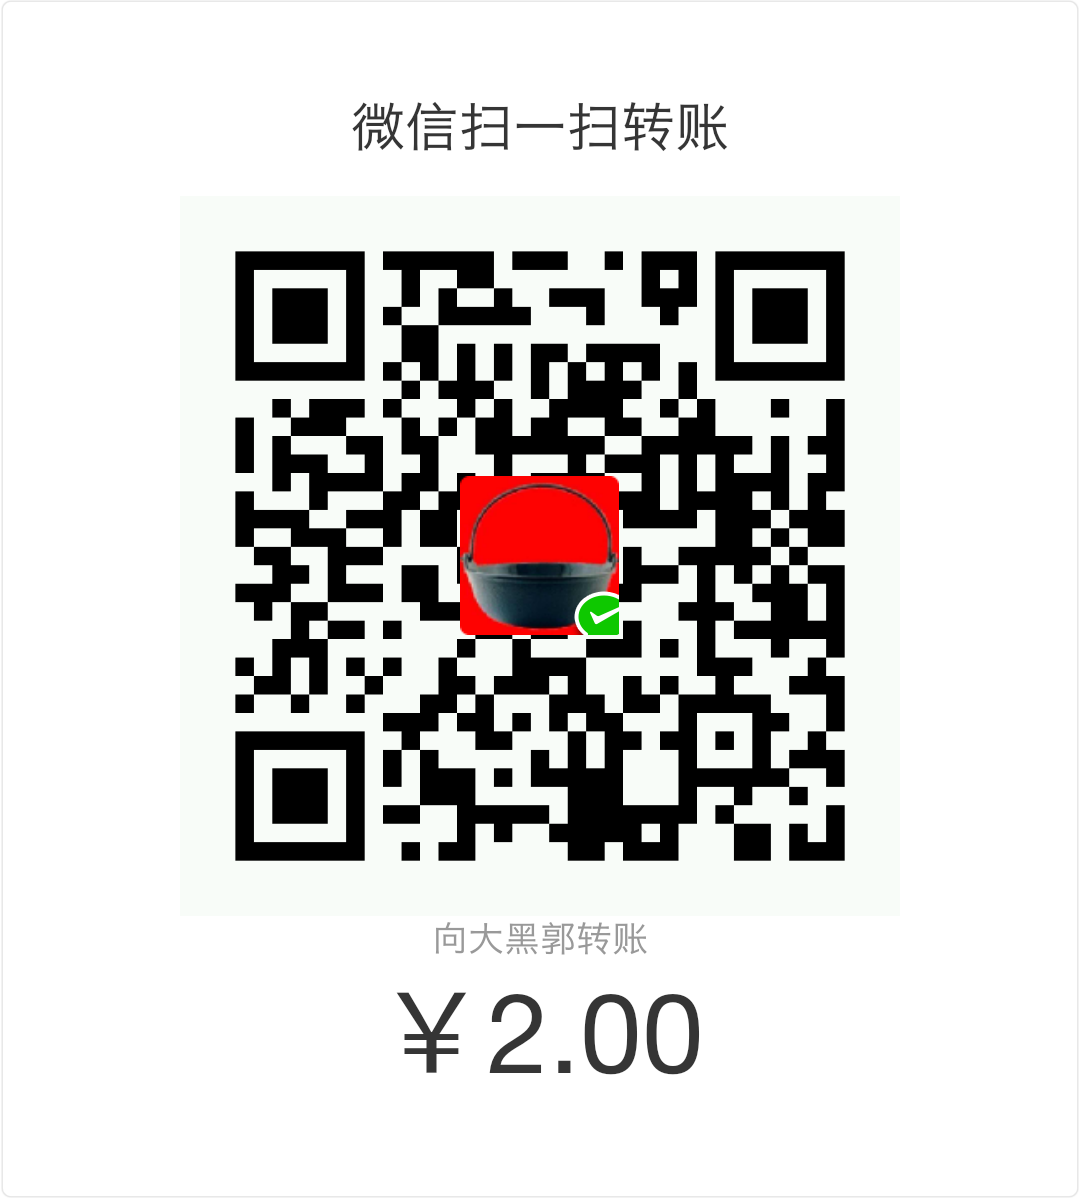 郭峰浩 WeChat Pay